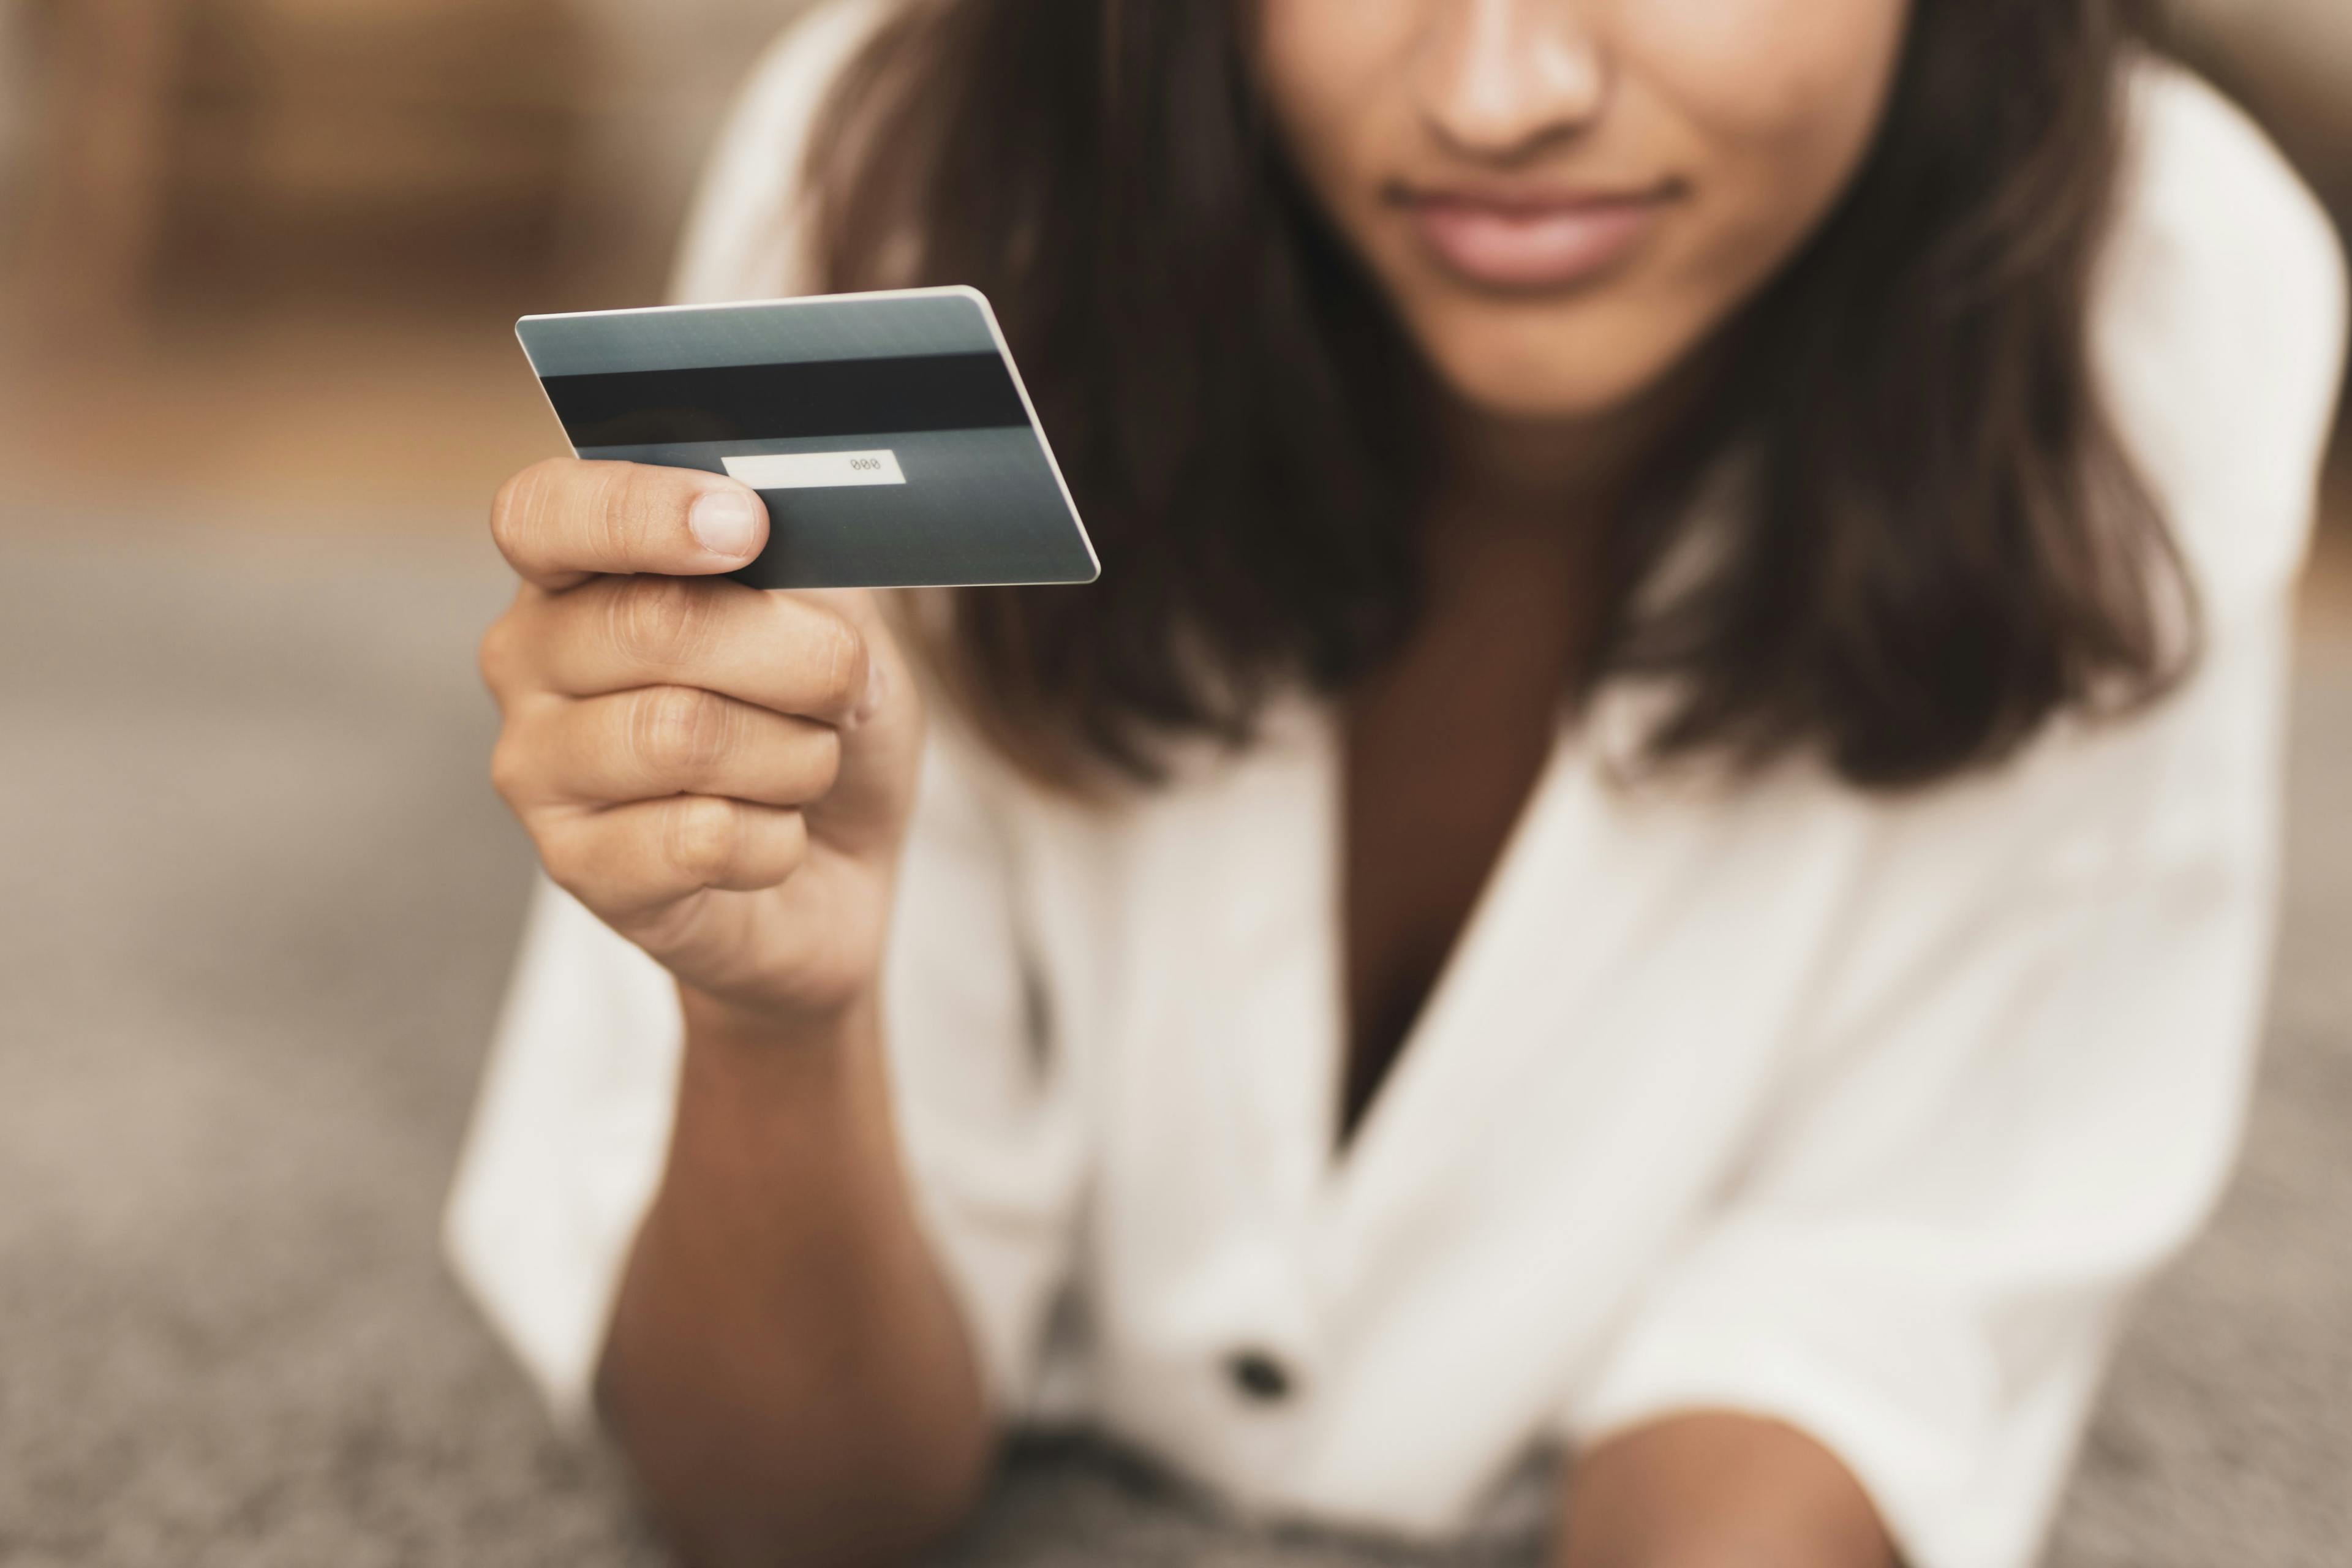 Juros do cartão de crédito chegam a 423,5% a.a; saiba como conseguir crédito mais barato